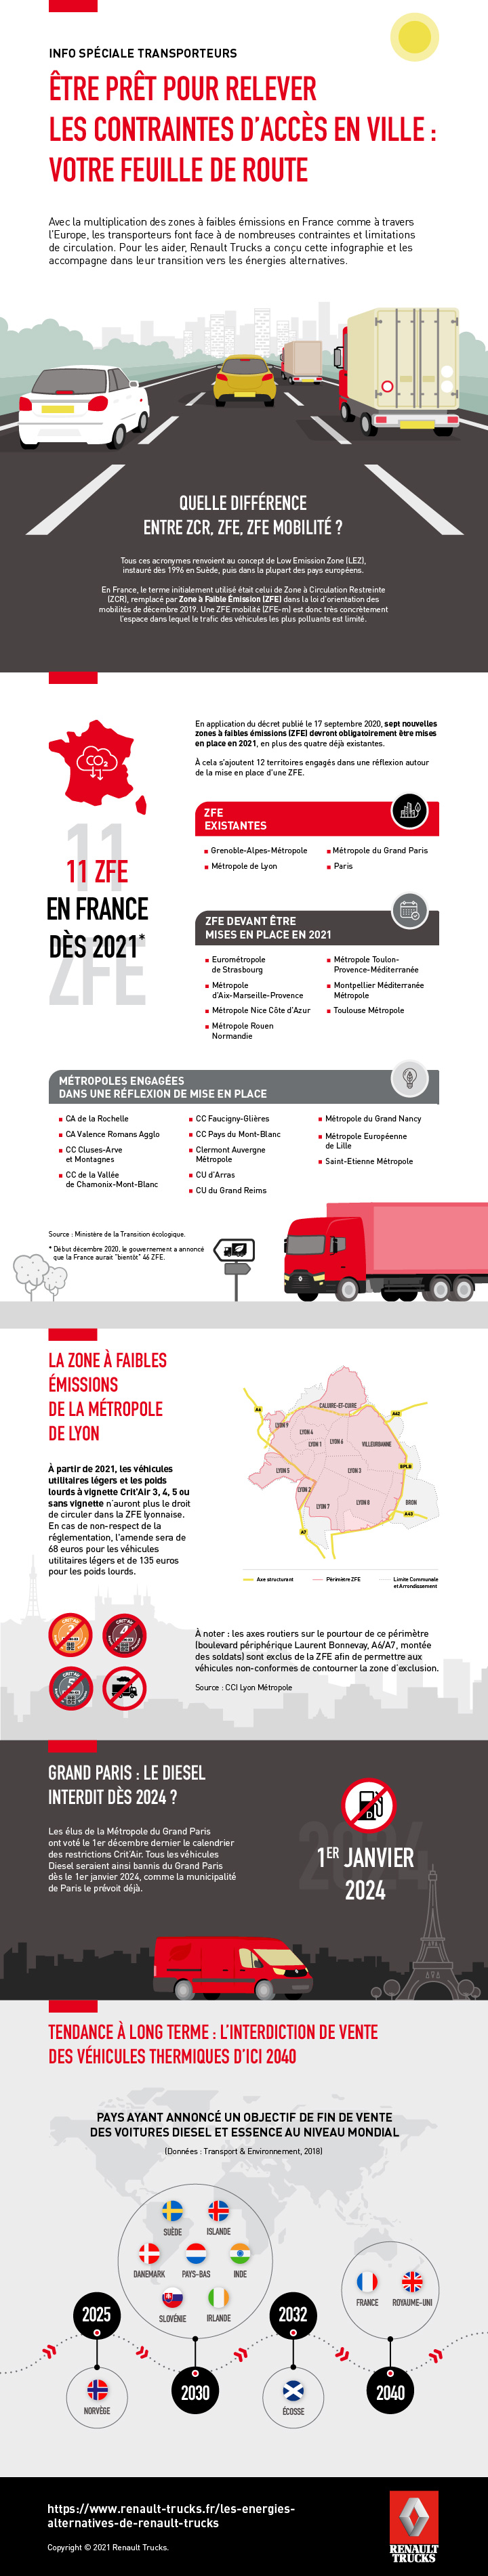 Infographie Renault Trucks contraintes Mobilité villes